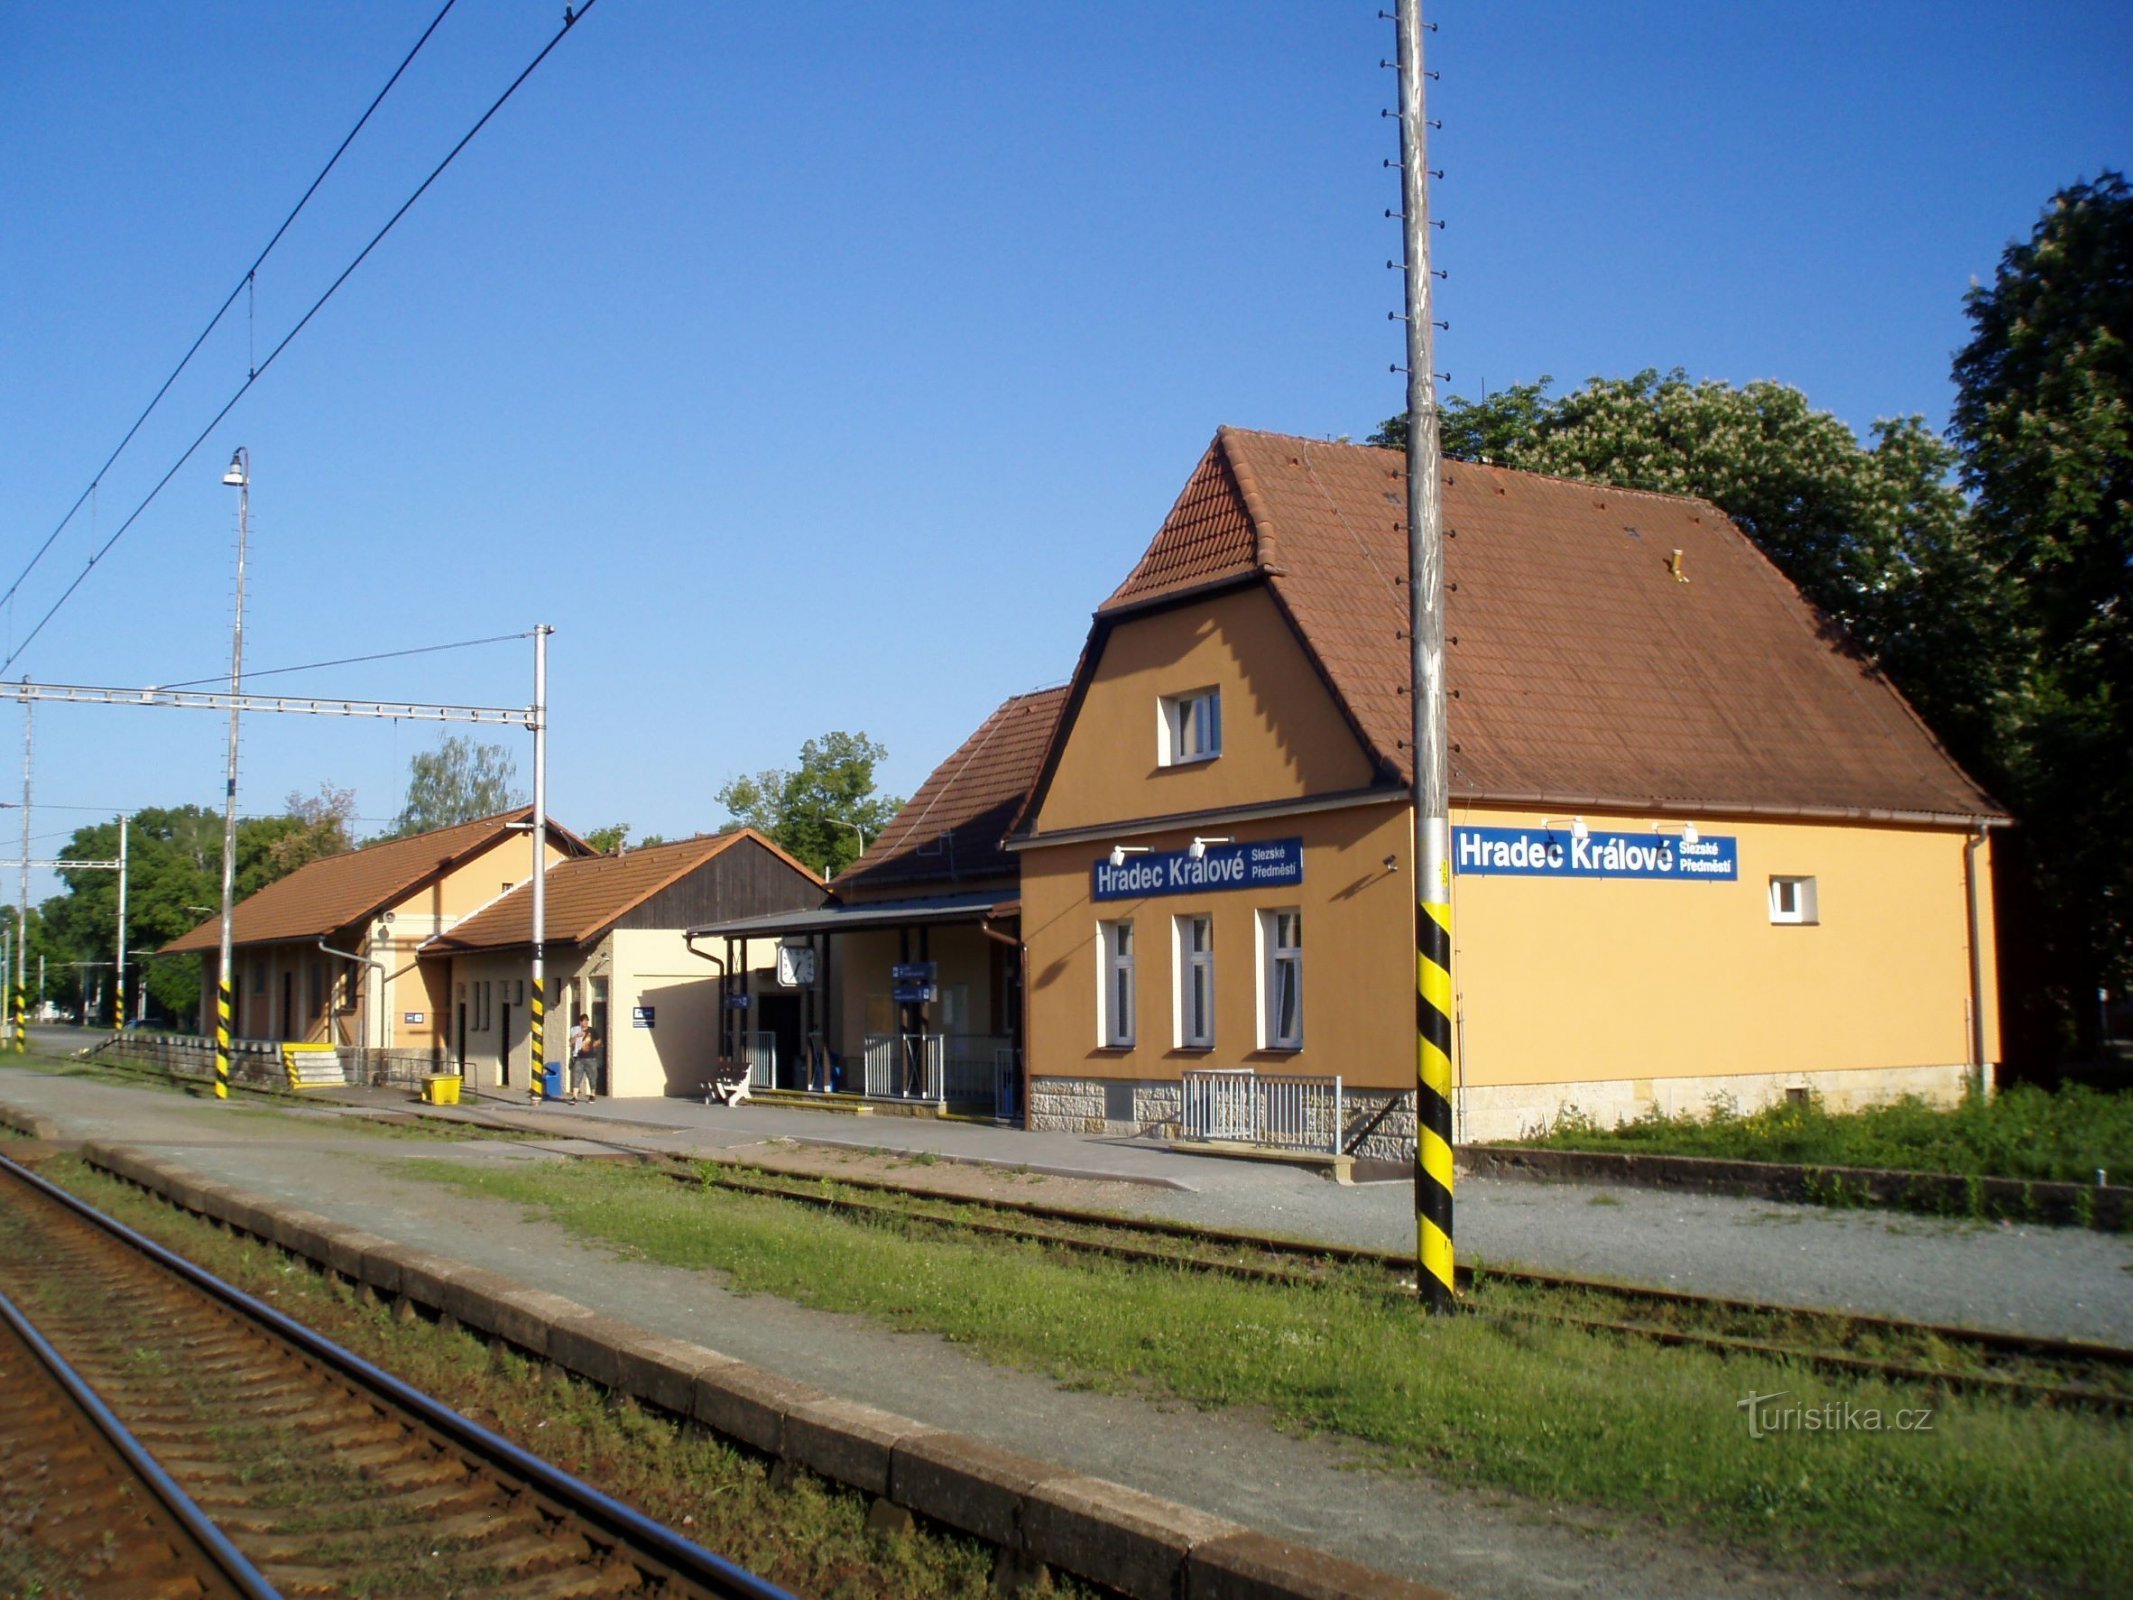 Railway Station in Silesian Suburbs (Hradec Králové, 19.5.2012)